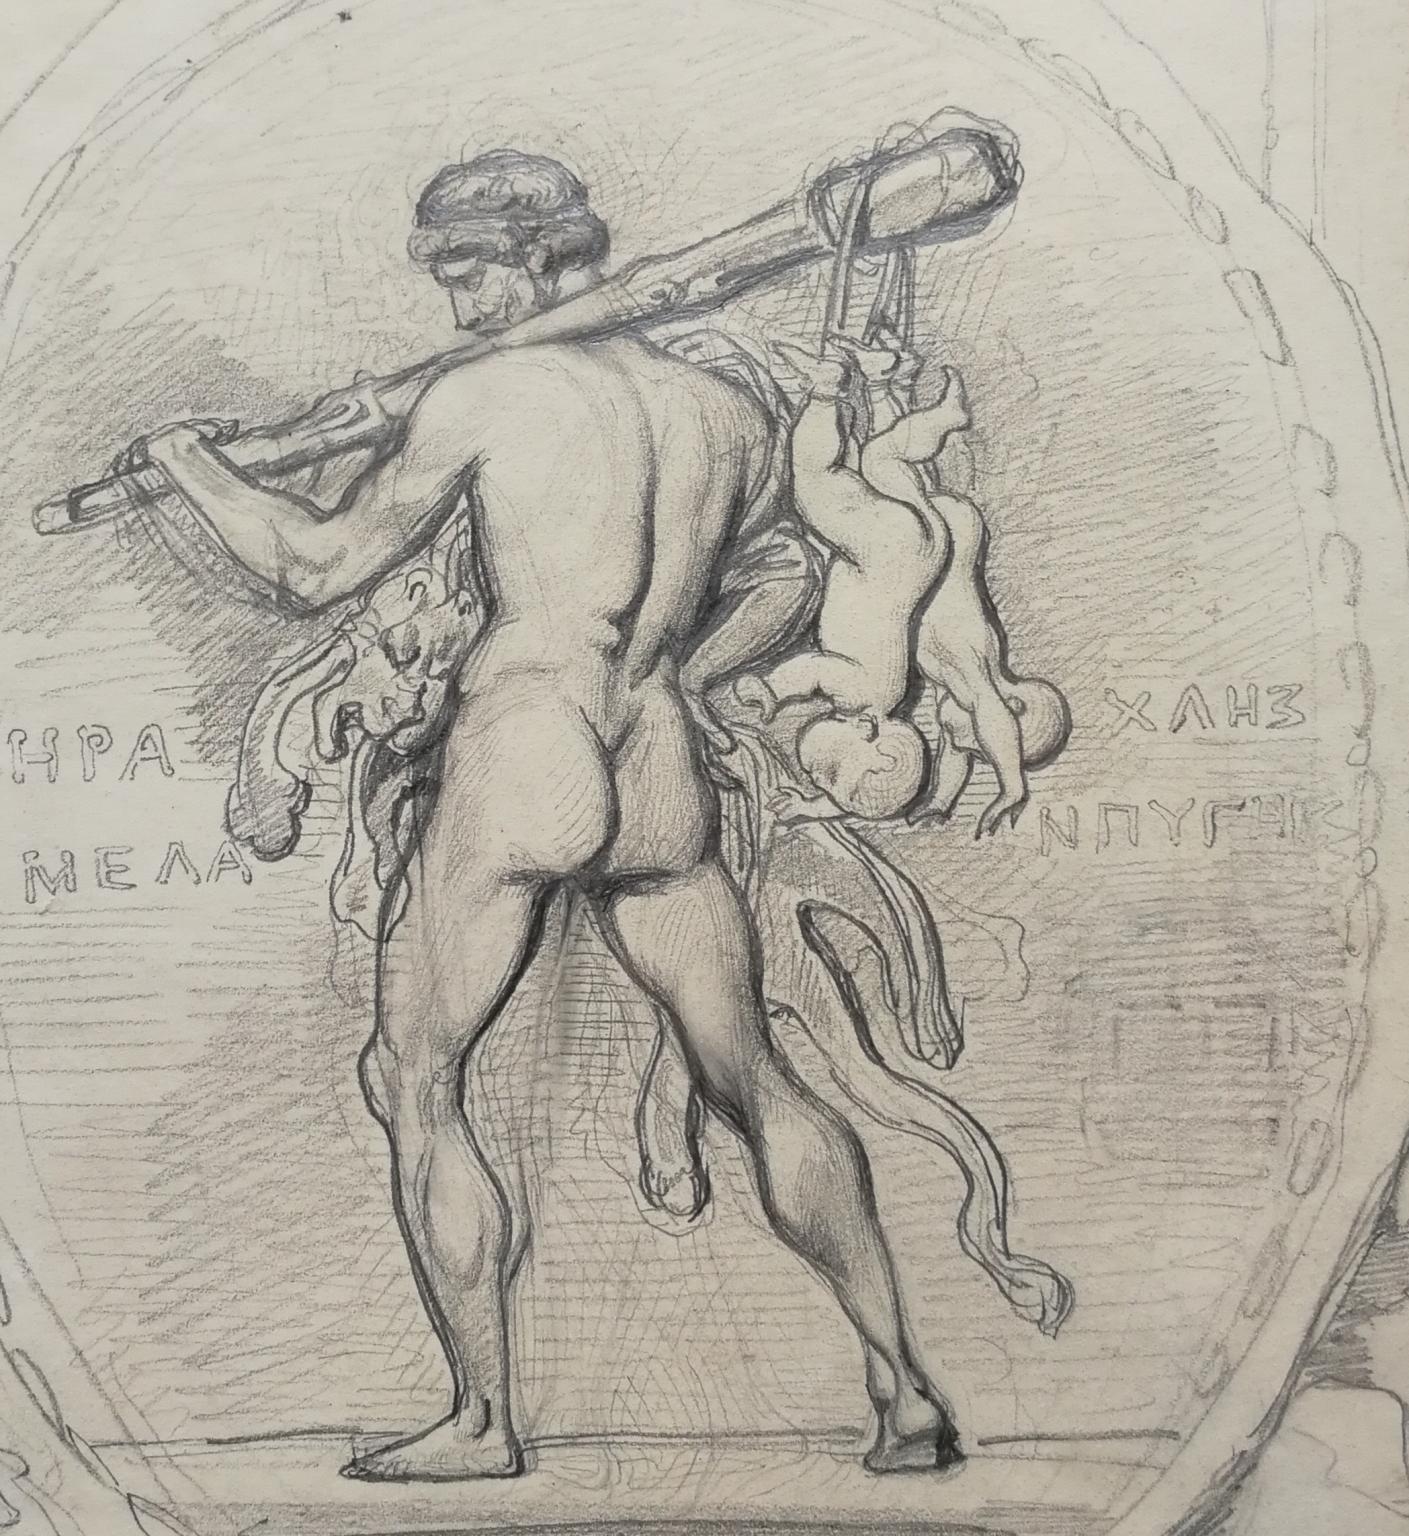 Dessin figuratif mythologique néoclassique français début 18ème siècle - Romantique Art par Achille Devéria